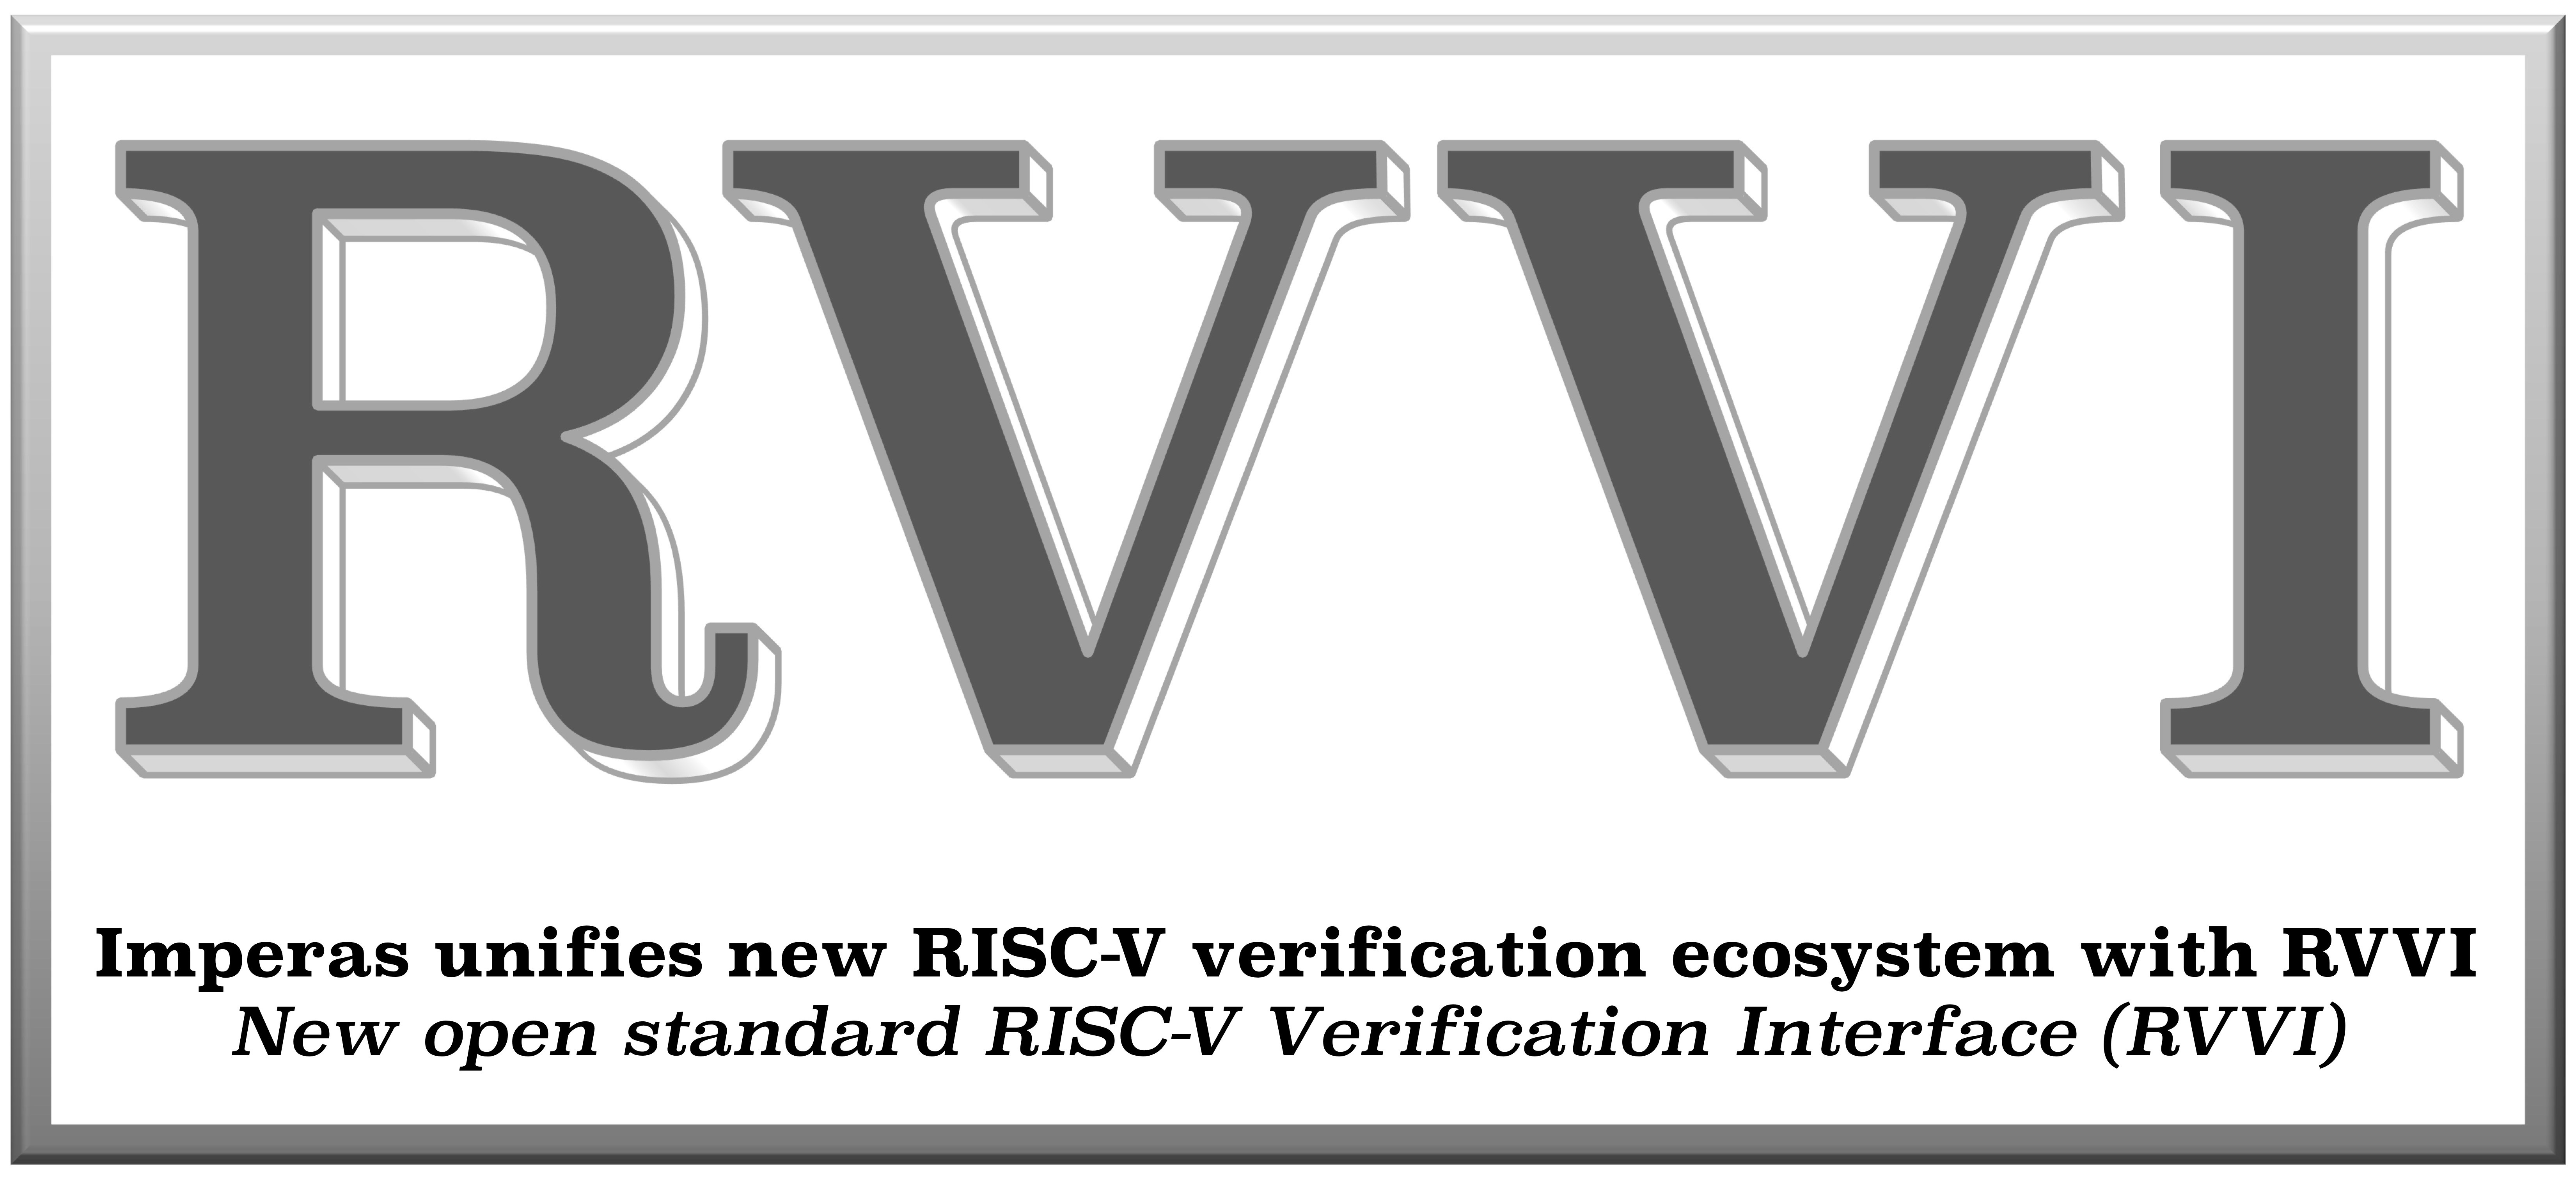 RVVI (RISC-V Verification Interface) for RISC-V Processor Verification